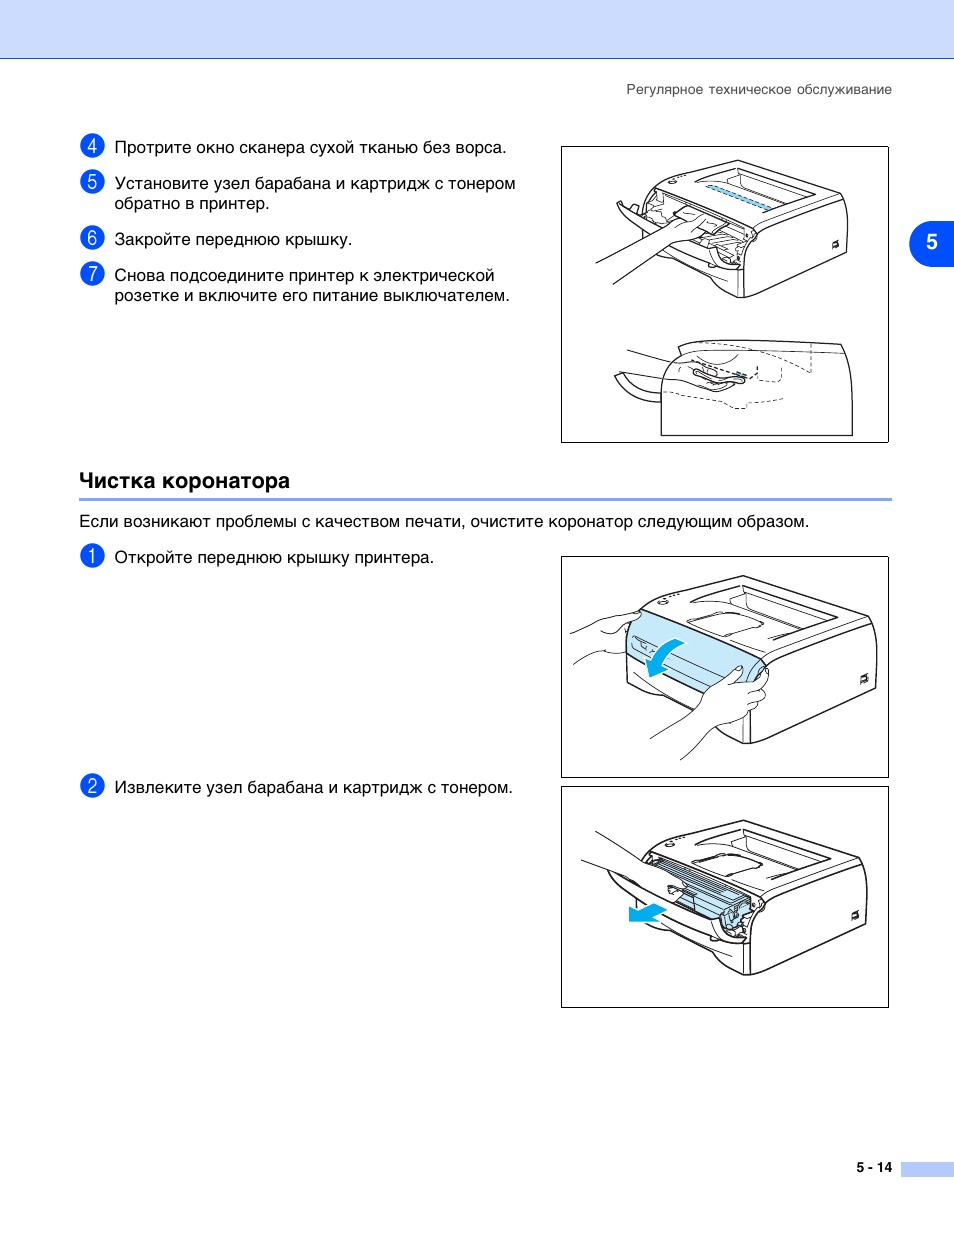 Как почистить печатающую головку принтера с помощью промывочной жидкости - kupihome.ru